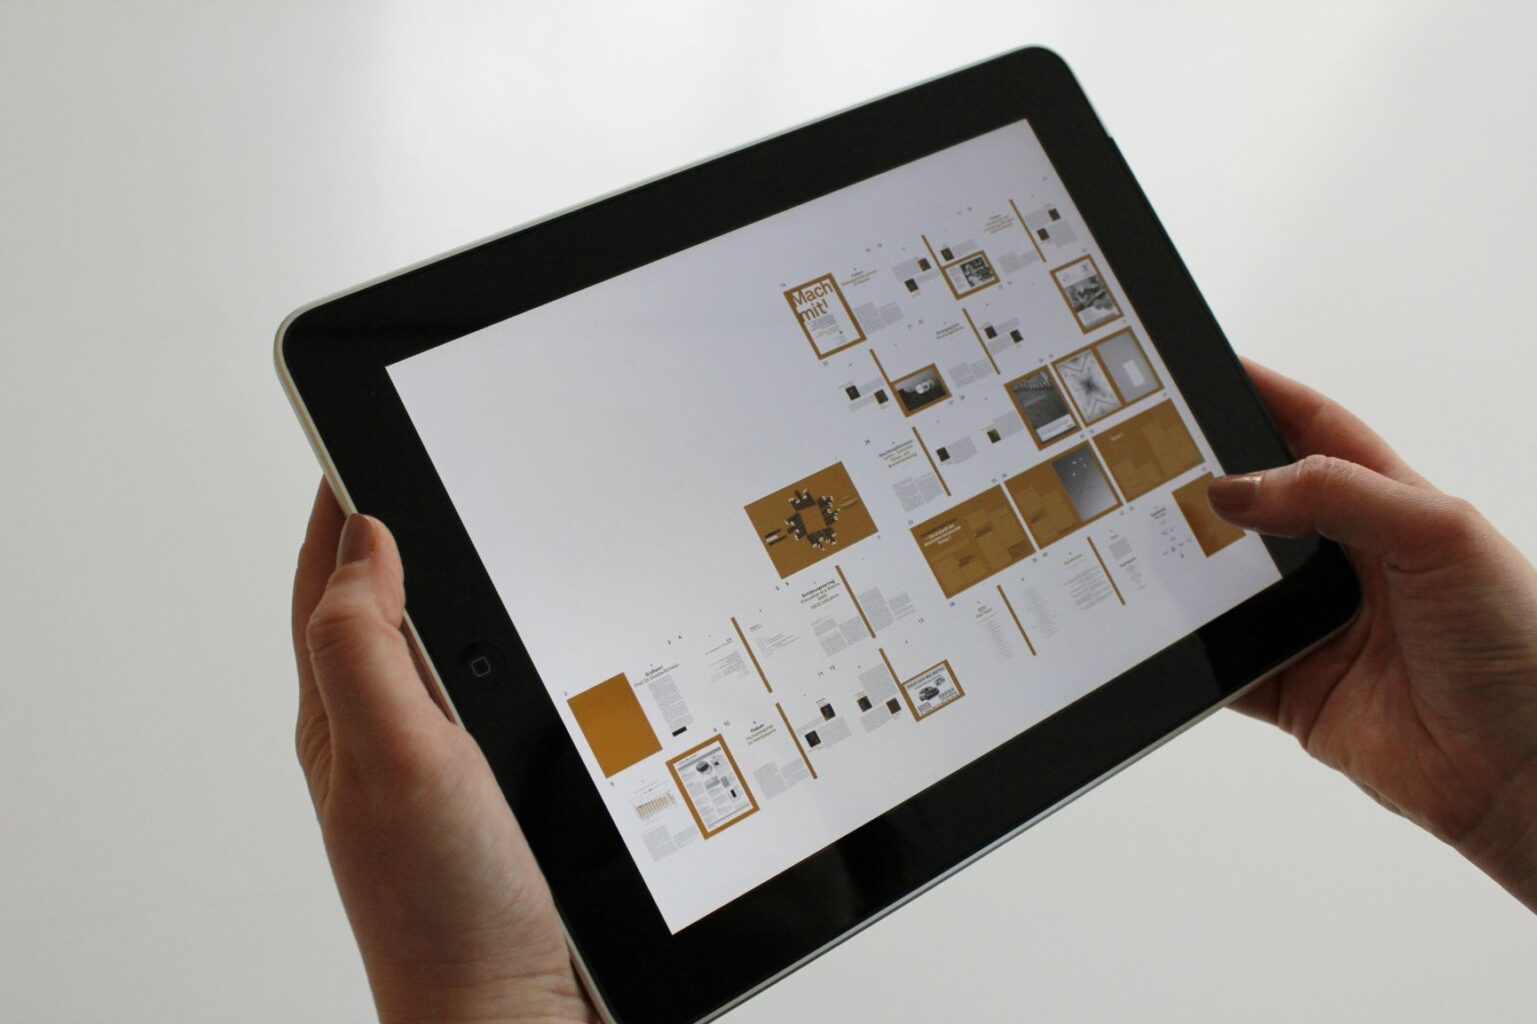 Tablet trzymany w dłoniach. Na wyświetlaczu grafiki i schematy / Digital tablet held in hands. Charts and figures visible on the screen